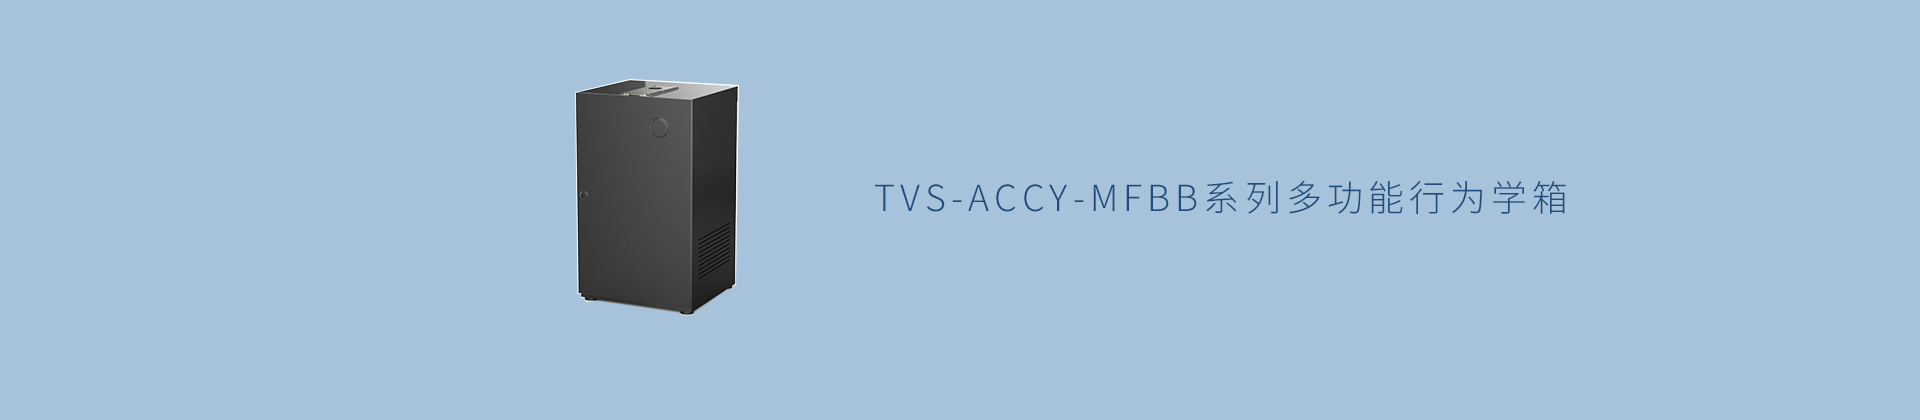 TVS-ACCY-MFBB系列多功能行为学箱